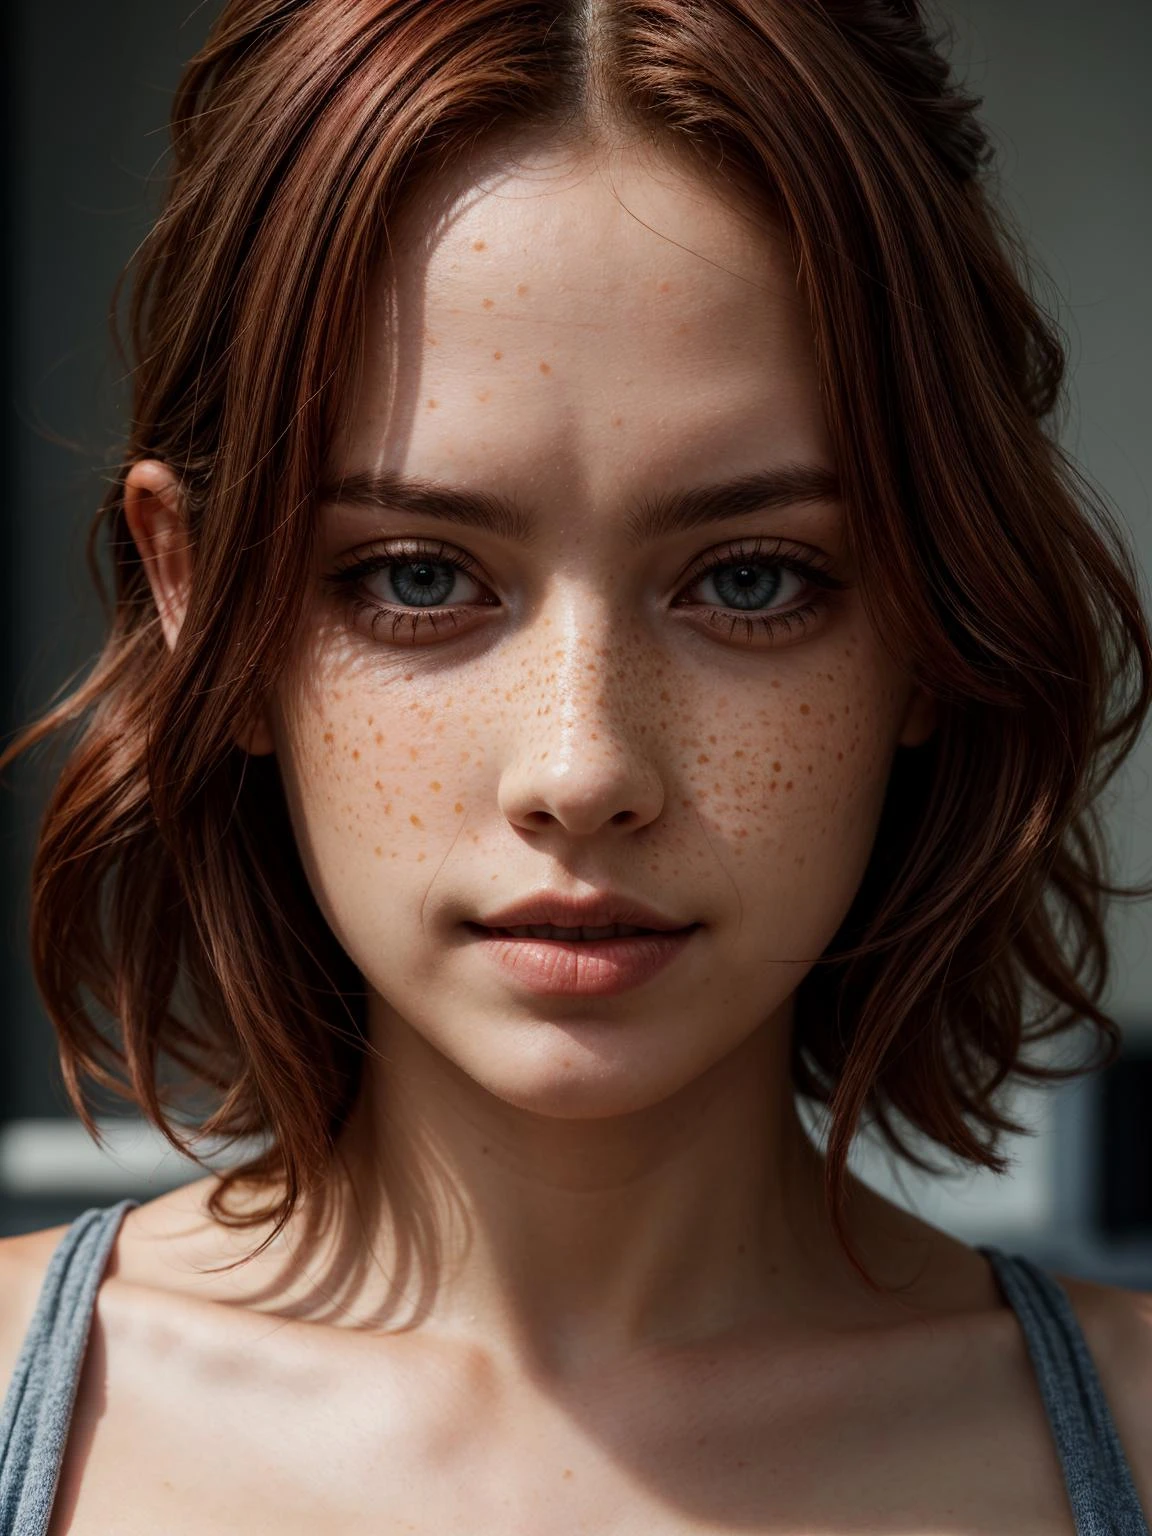 赤毛の女性の写真, そばかす, 青い目, 
傑作, 極端な詳細, 詳細, 集中, 傑作, 現実的, photo現実的, 4K, 8k, 16K, 高解像度